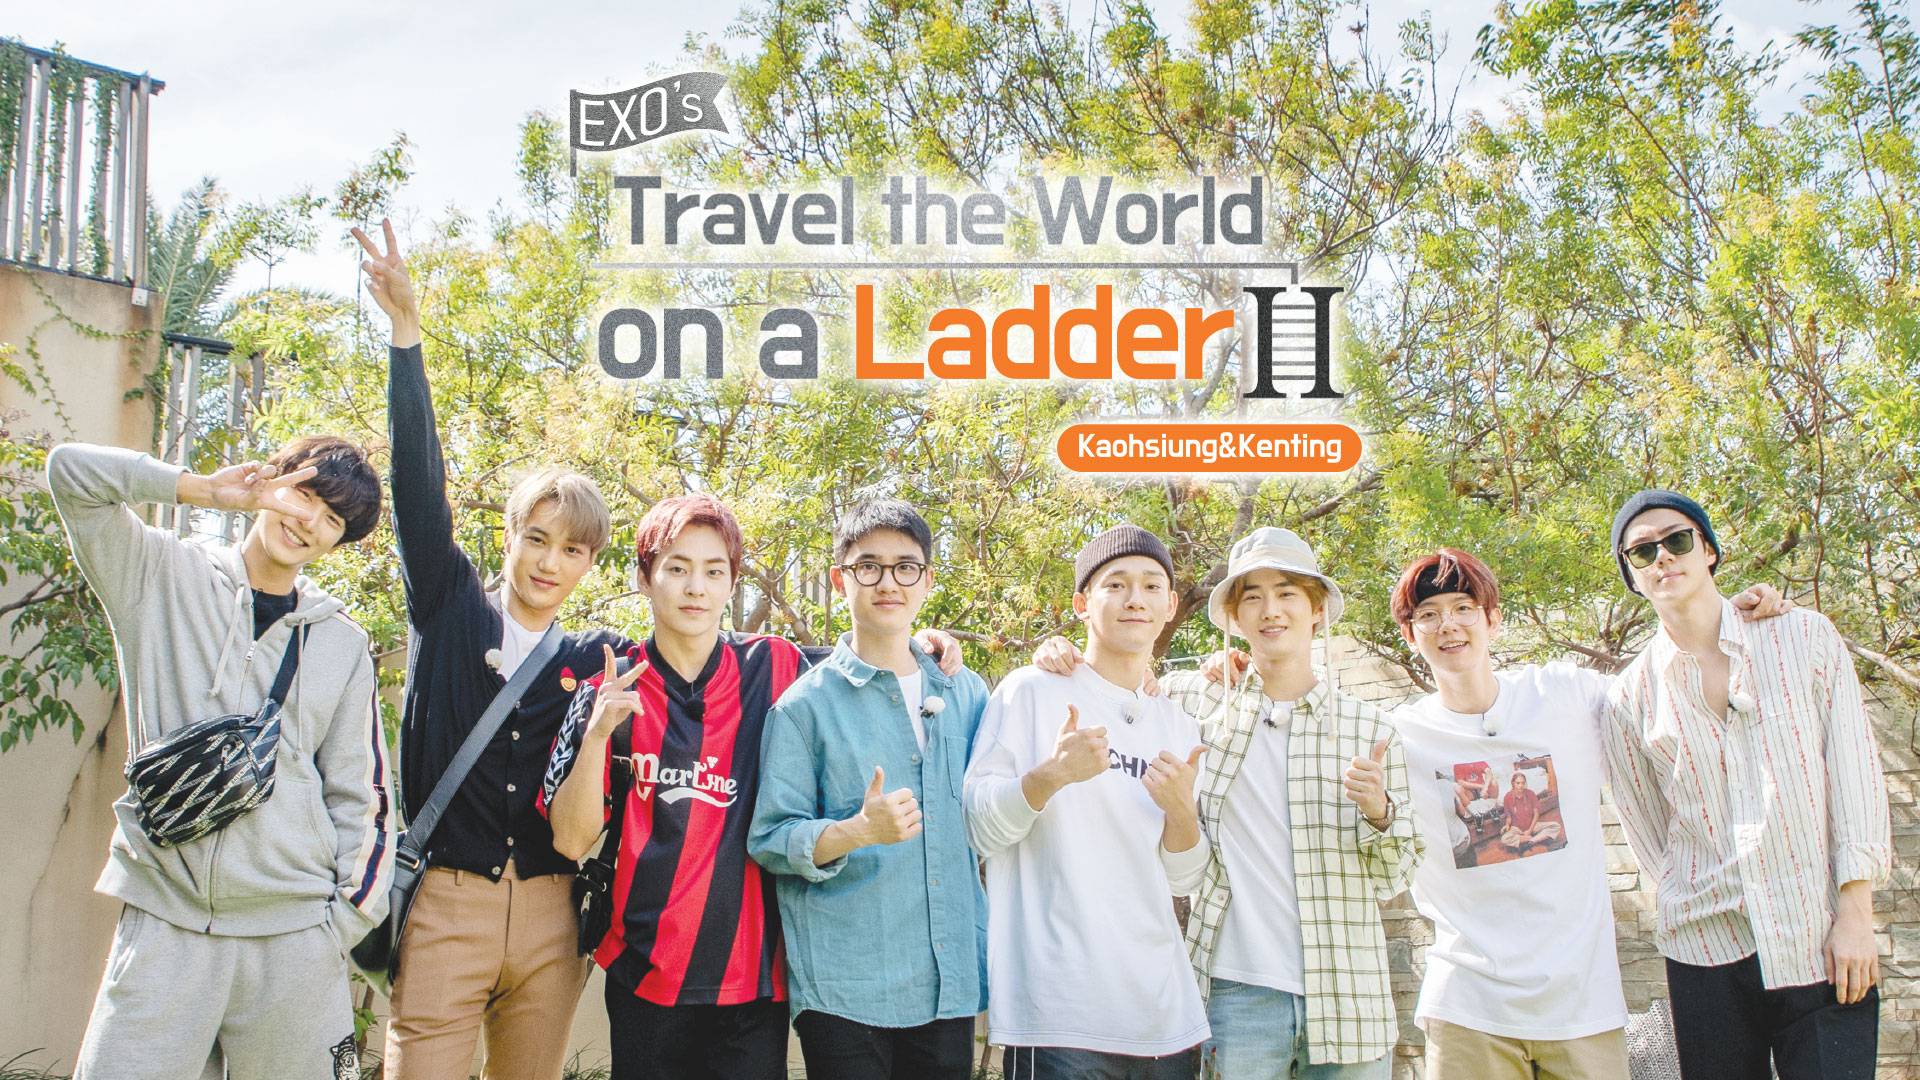 EXO's Travel the World on a Ladder Season 2 ดูซีรี่ส์ออนไลน์